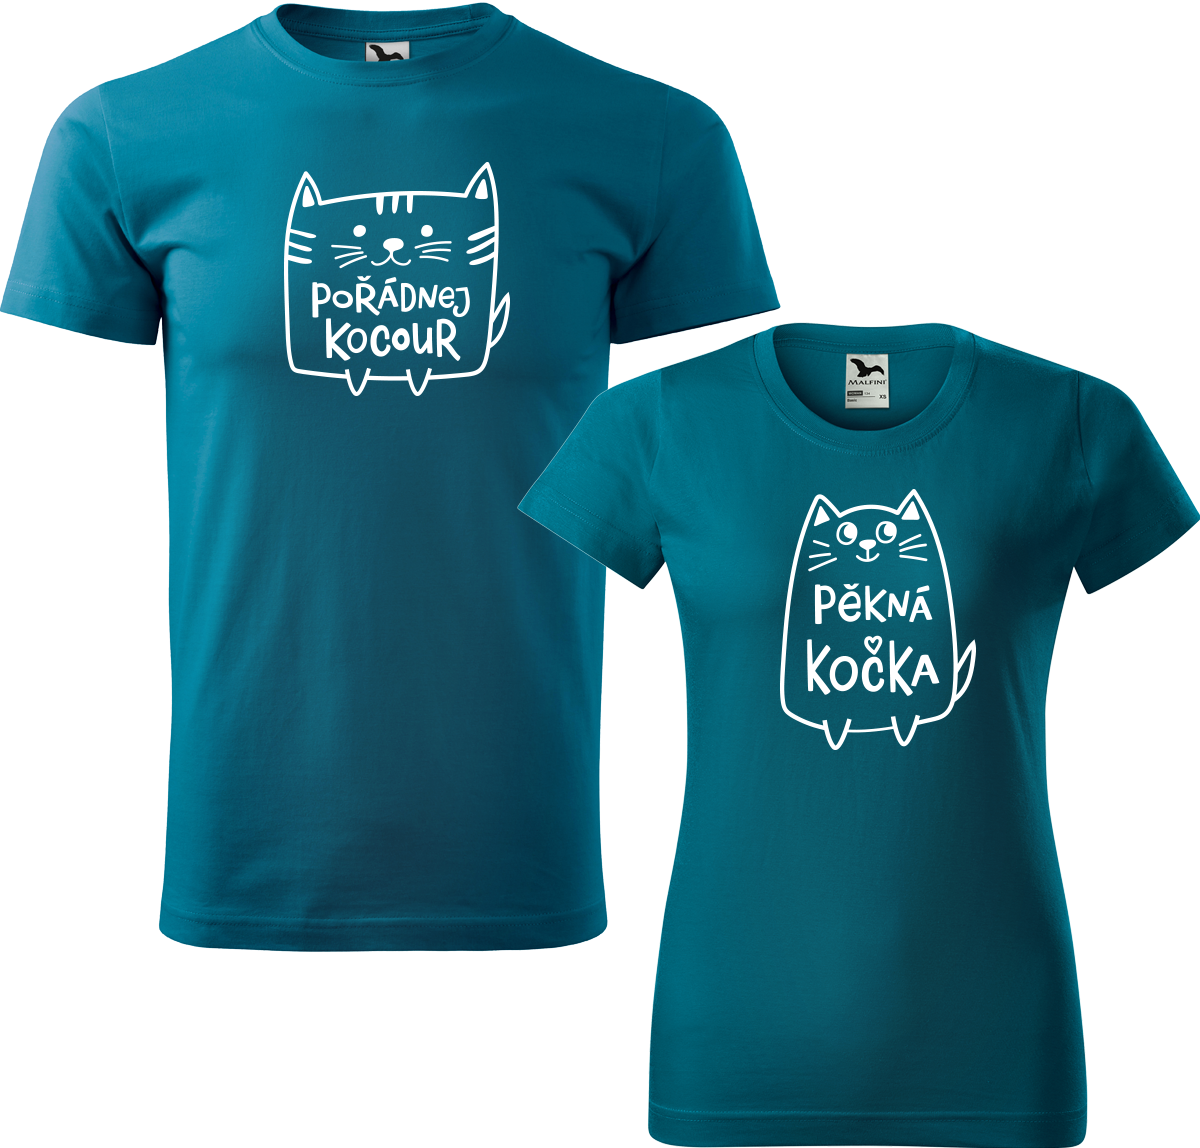 Trička pro páry - Pořádnej kocour a pěkná kočka Barva: Petrolejová (93), Velikost dámské tričko: L, Velikost pánské tričko: L